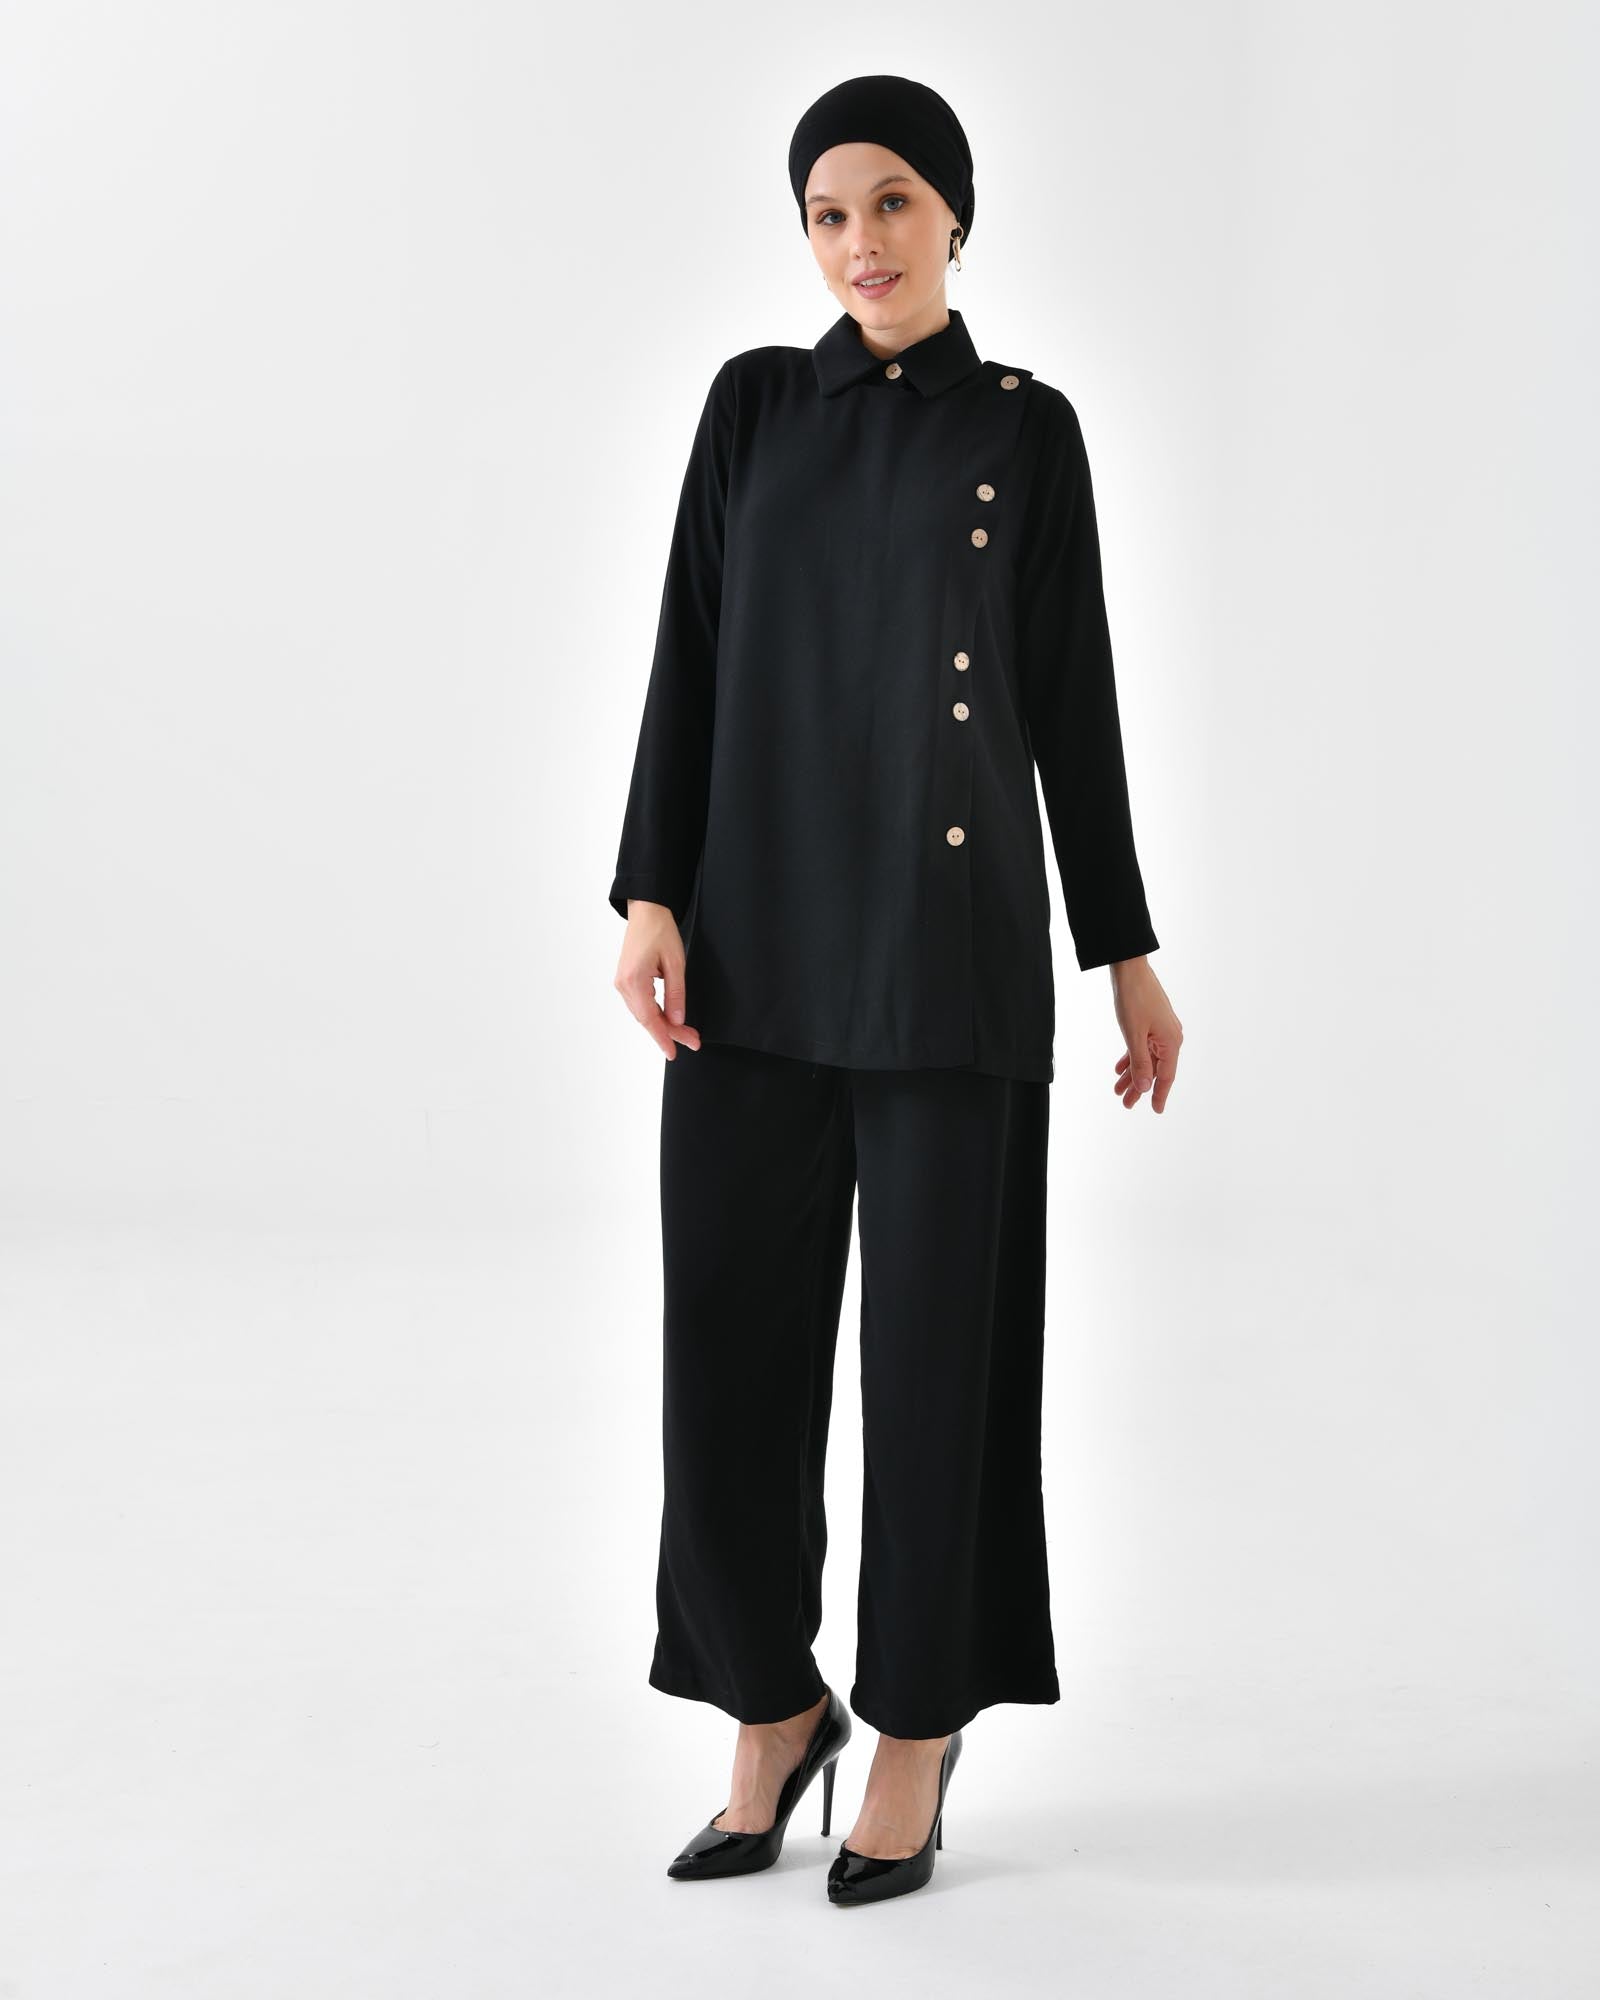 Hijab Zweiteiler- Damen Zweiteiler - Bluse mit Knopfdetails vorne und breite Hose